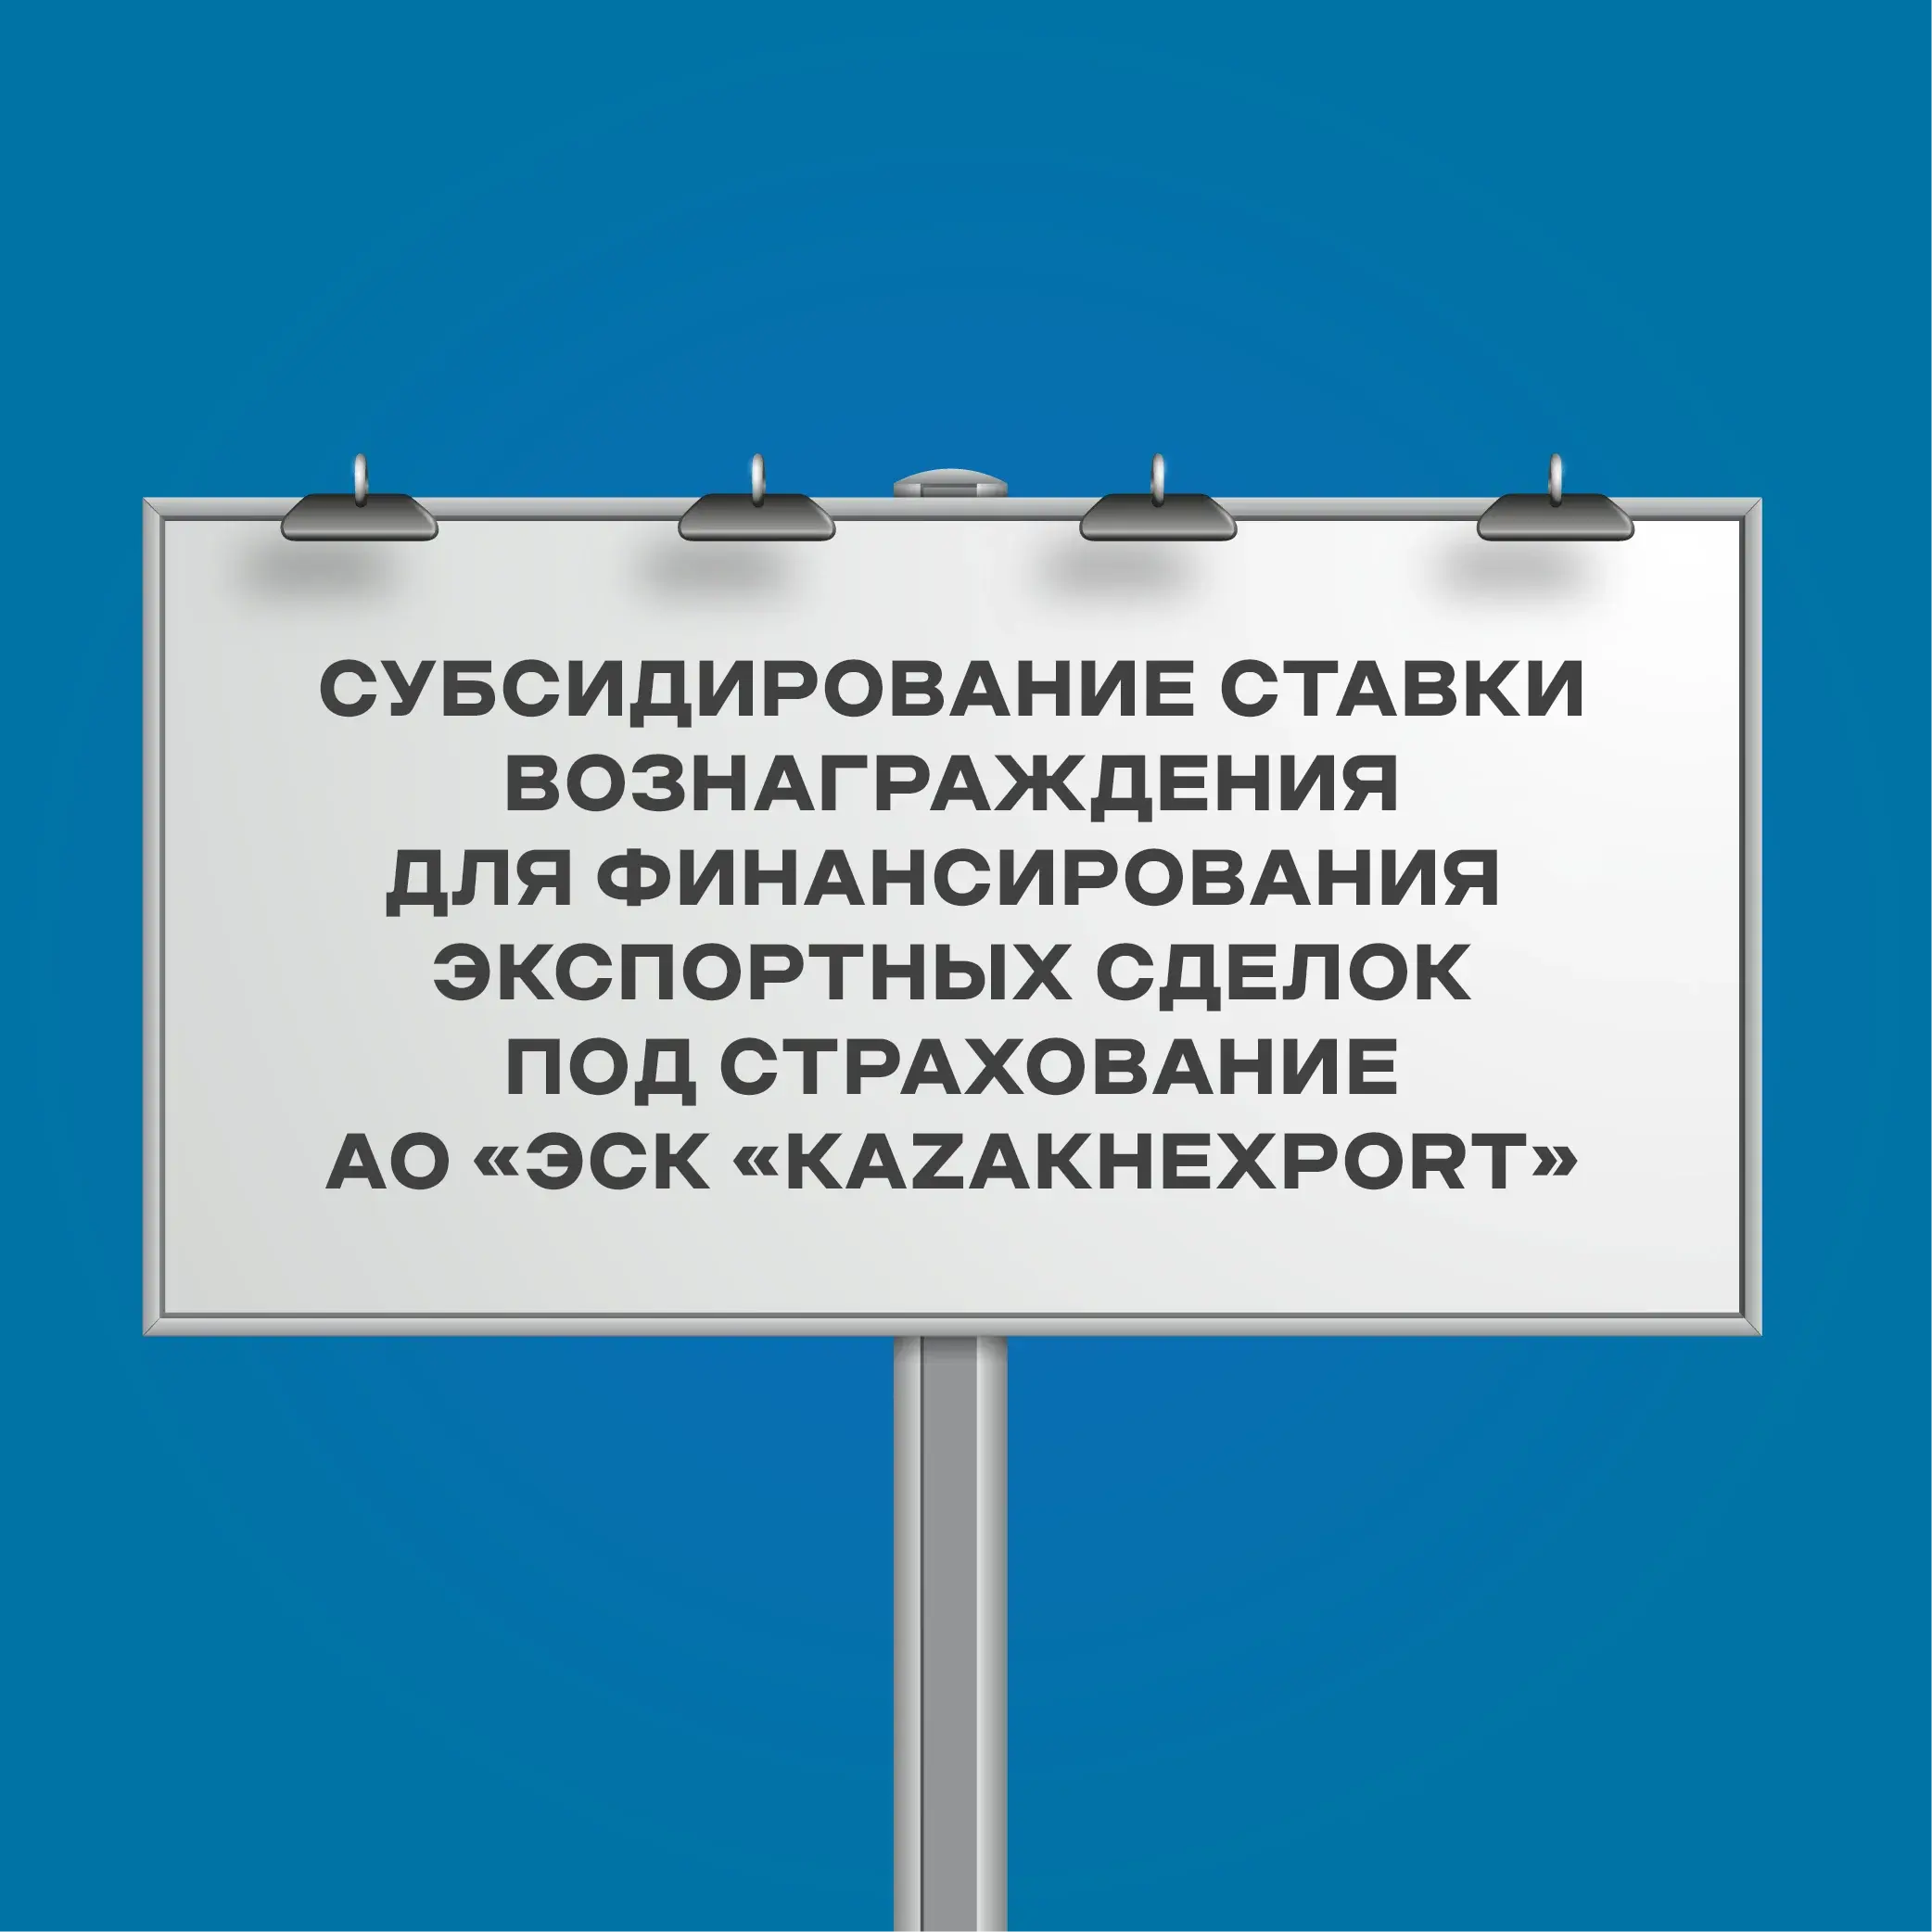 Субсидирование ставки вознаграждения для финансирования экспортных сделок под страхование АО «ЭСК «KazakhExport»